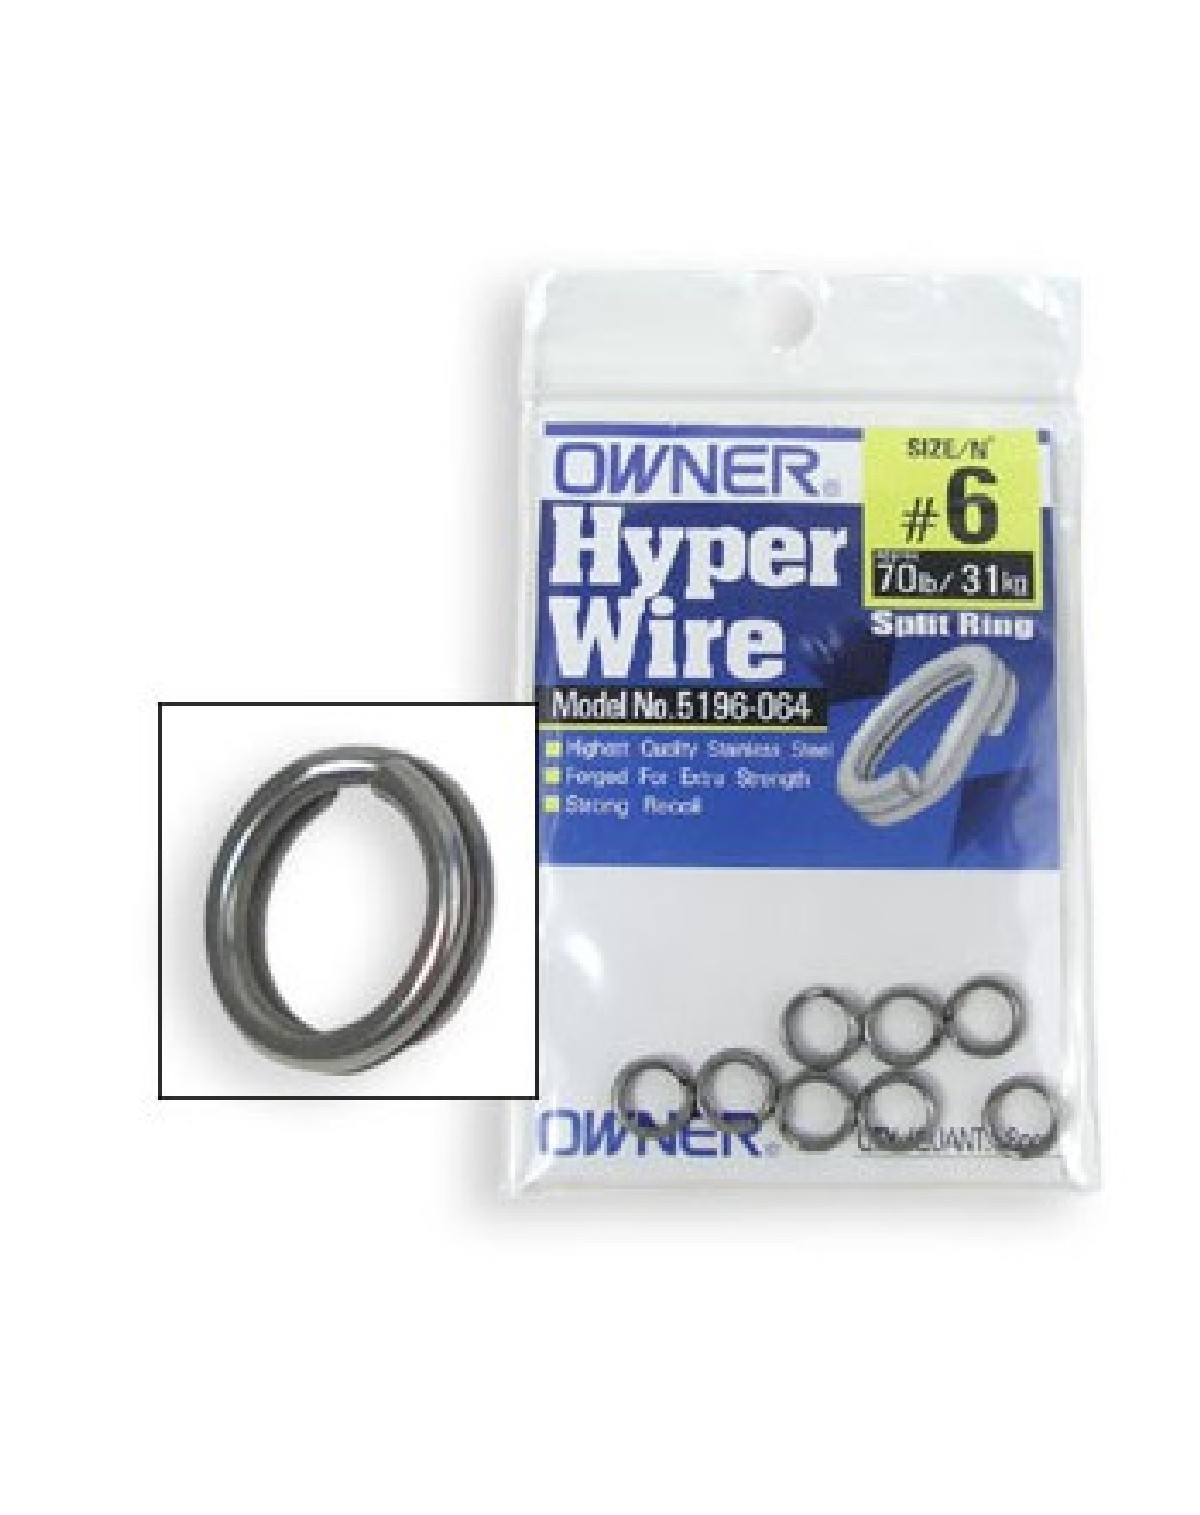 Owner Hyper wire Splitringen 10   6st. 220lb/99kg